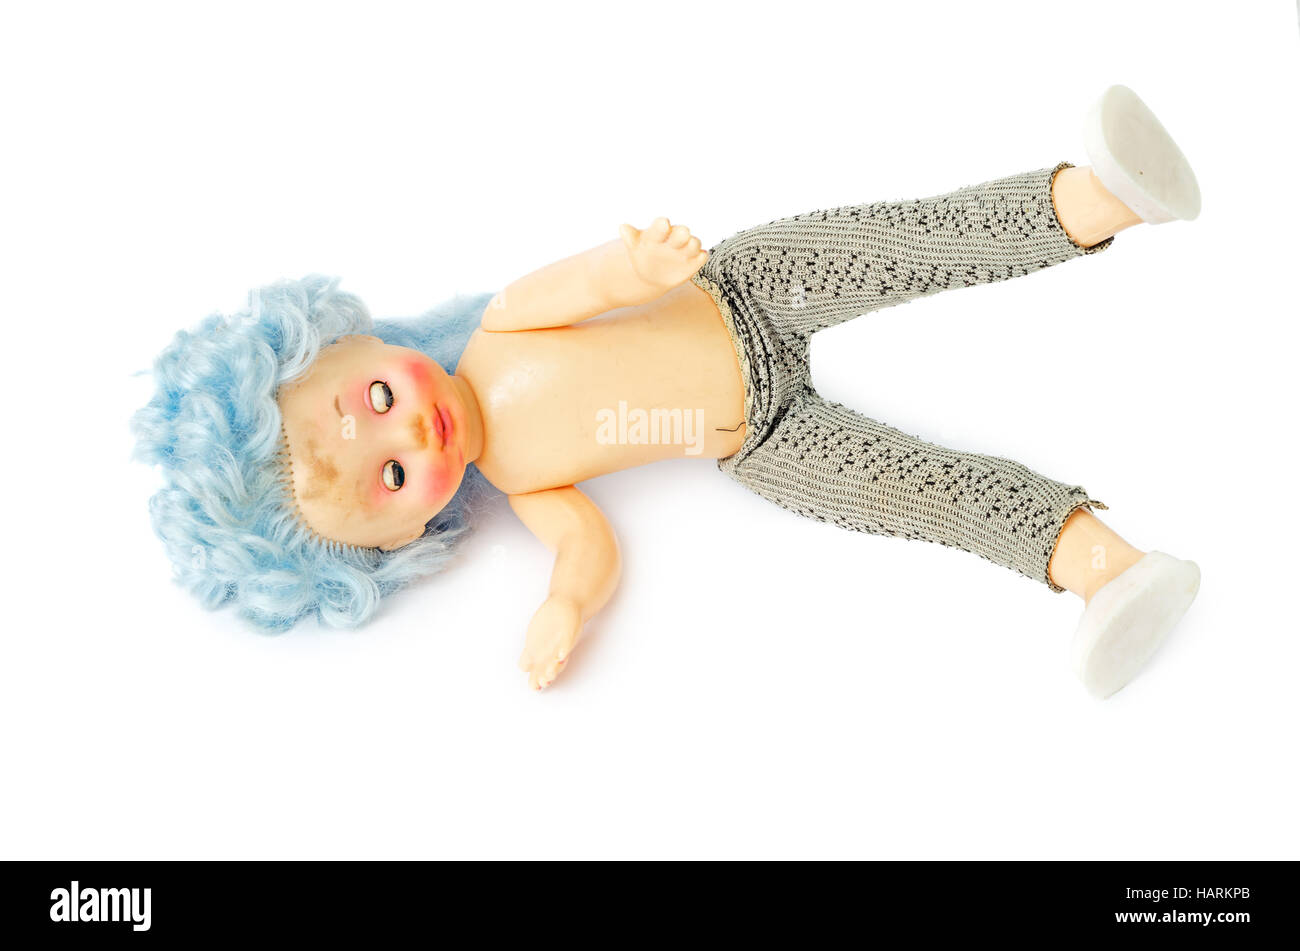 Le ignorancefr vieille poupée en plastique sale avec des cheveux bleus isolé sur fond blanc. Se trouve sur un côté avec сlosed les yeux. Banque D'Images